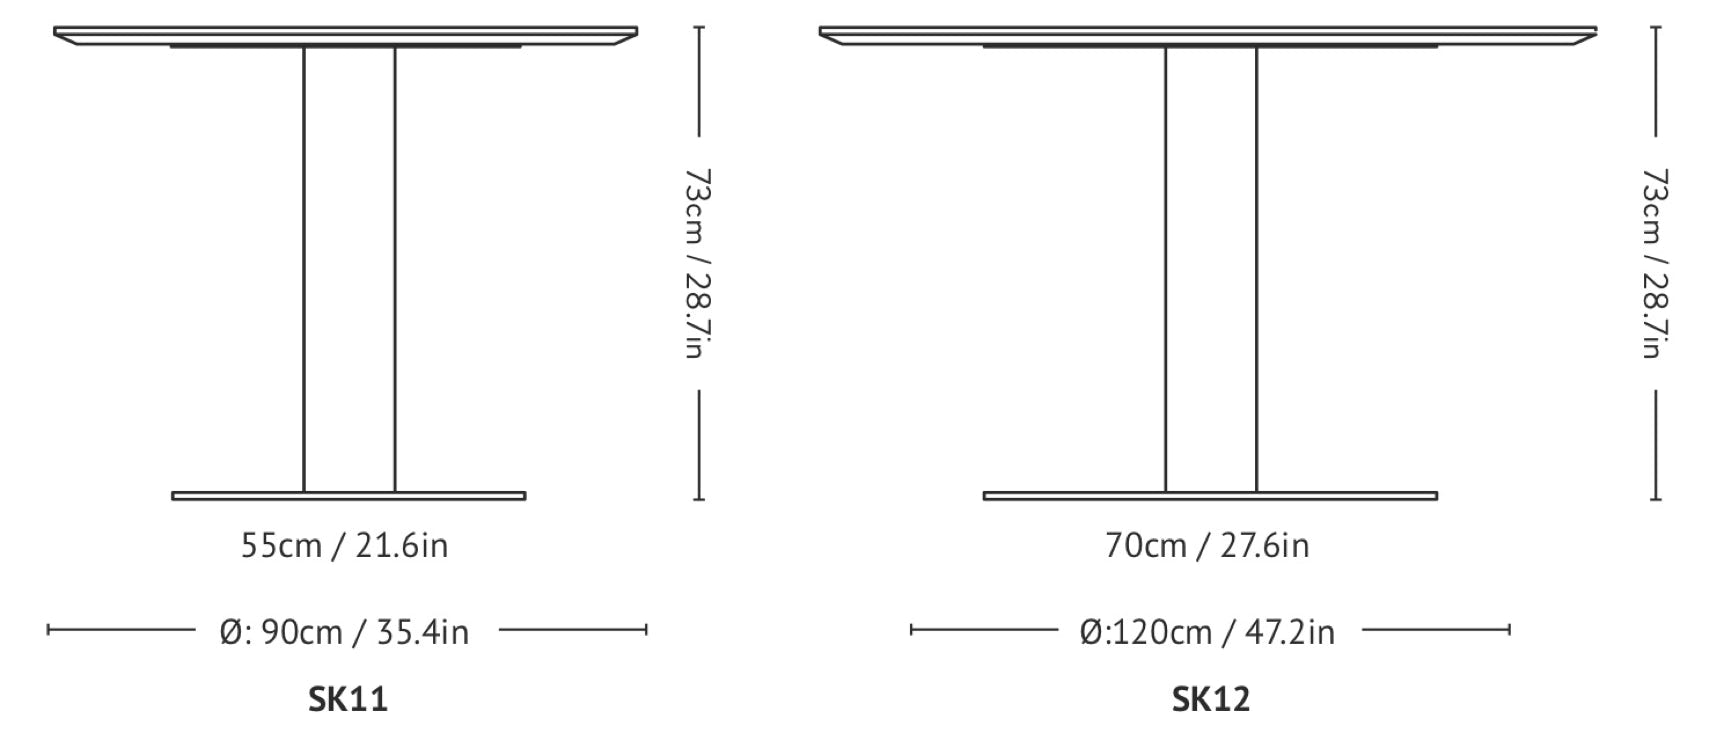 Tables In Between SK11 & SK12 